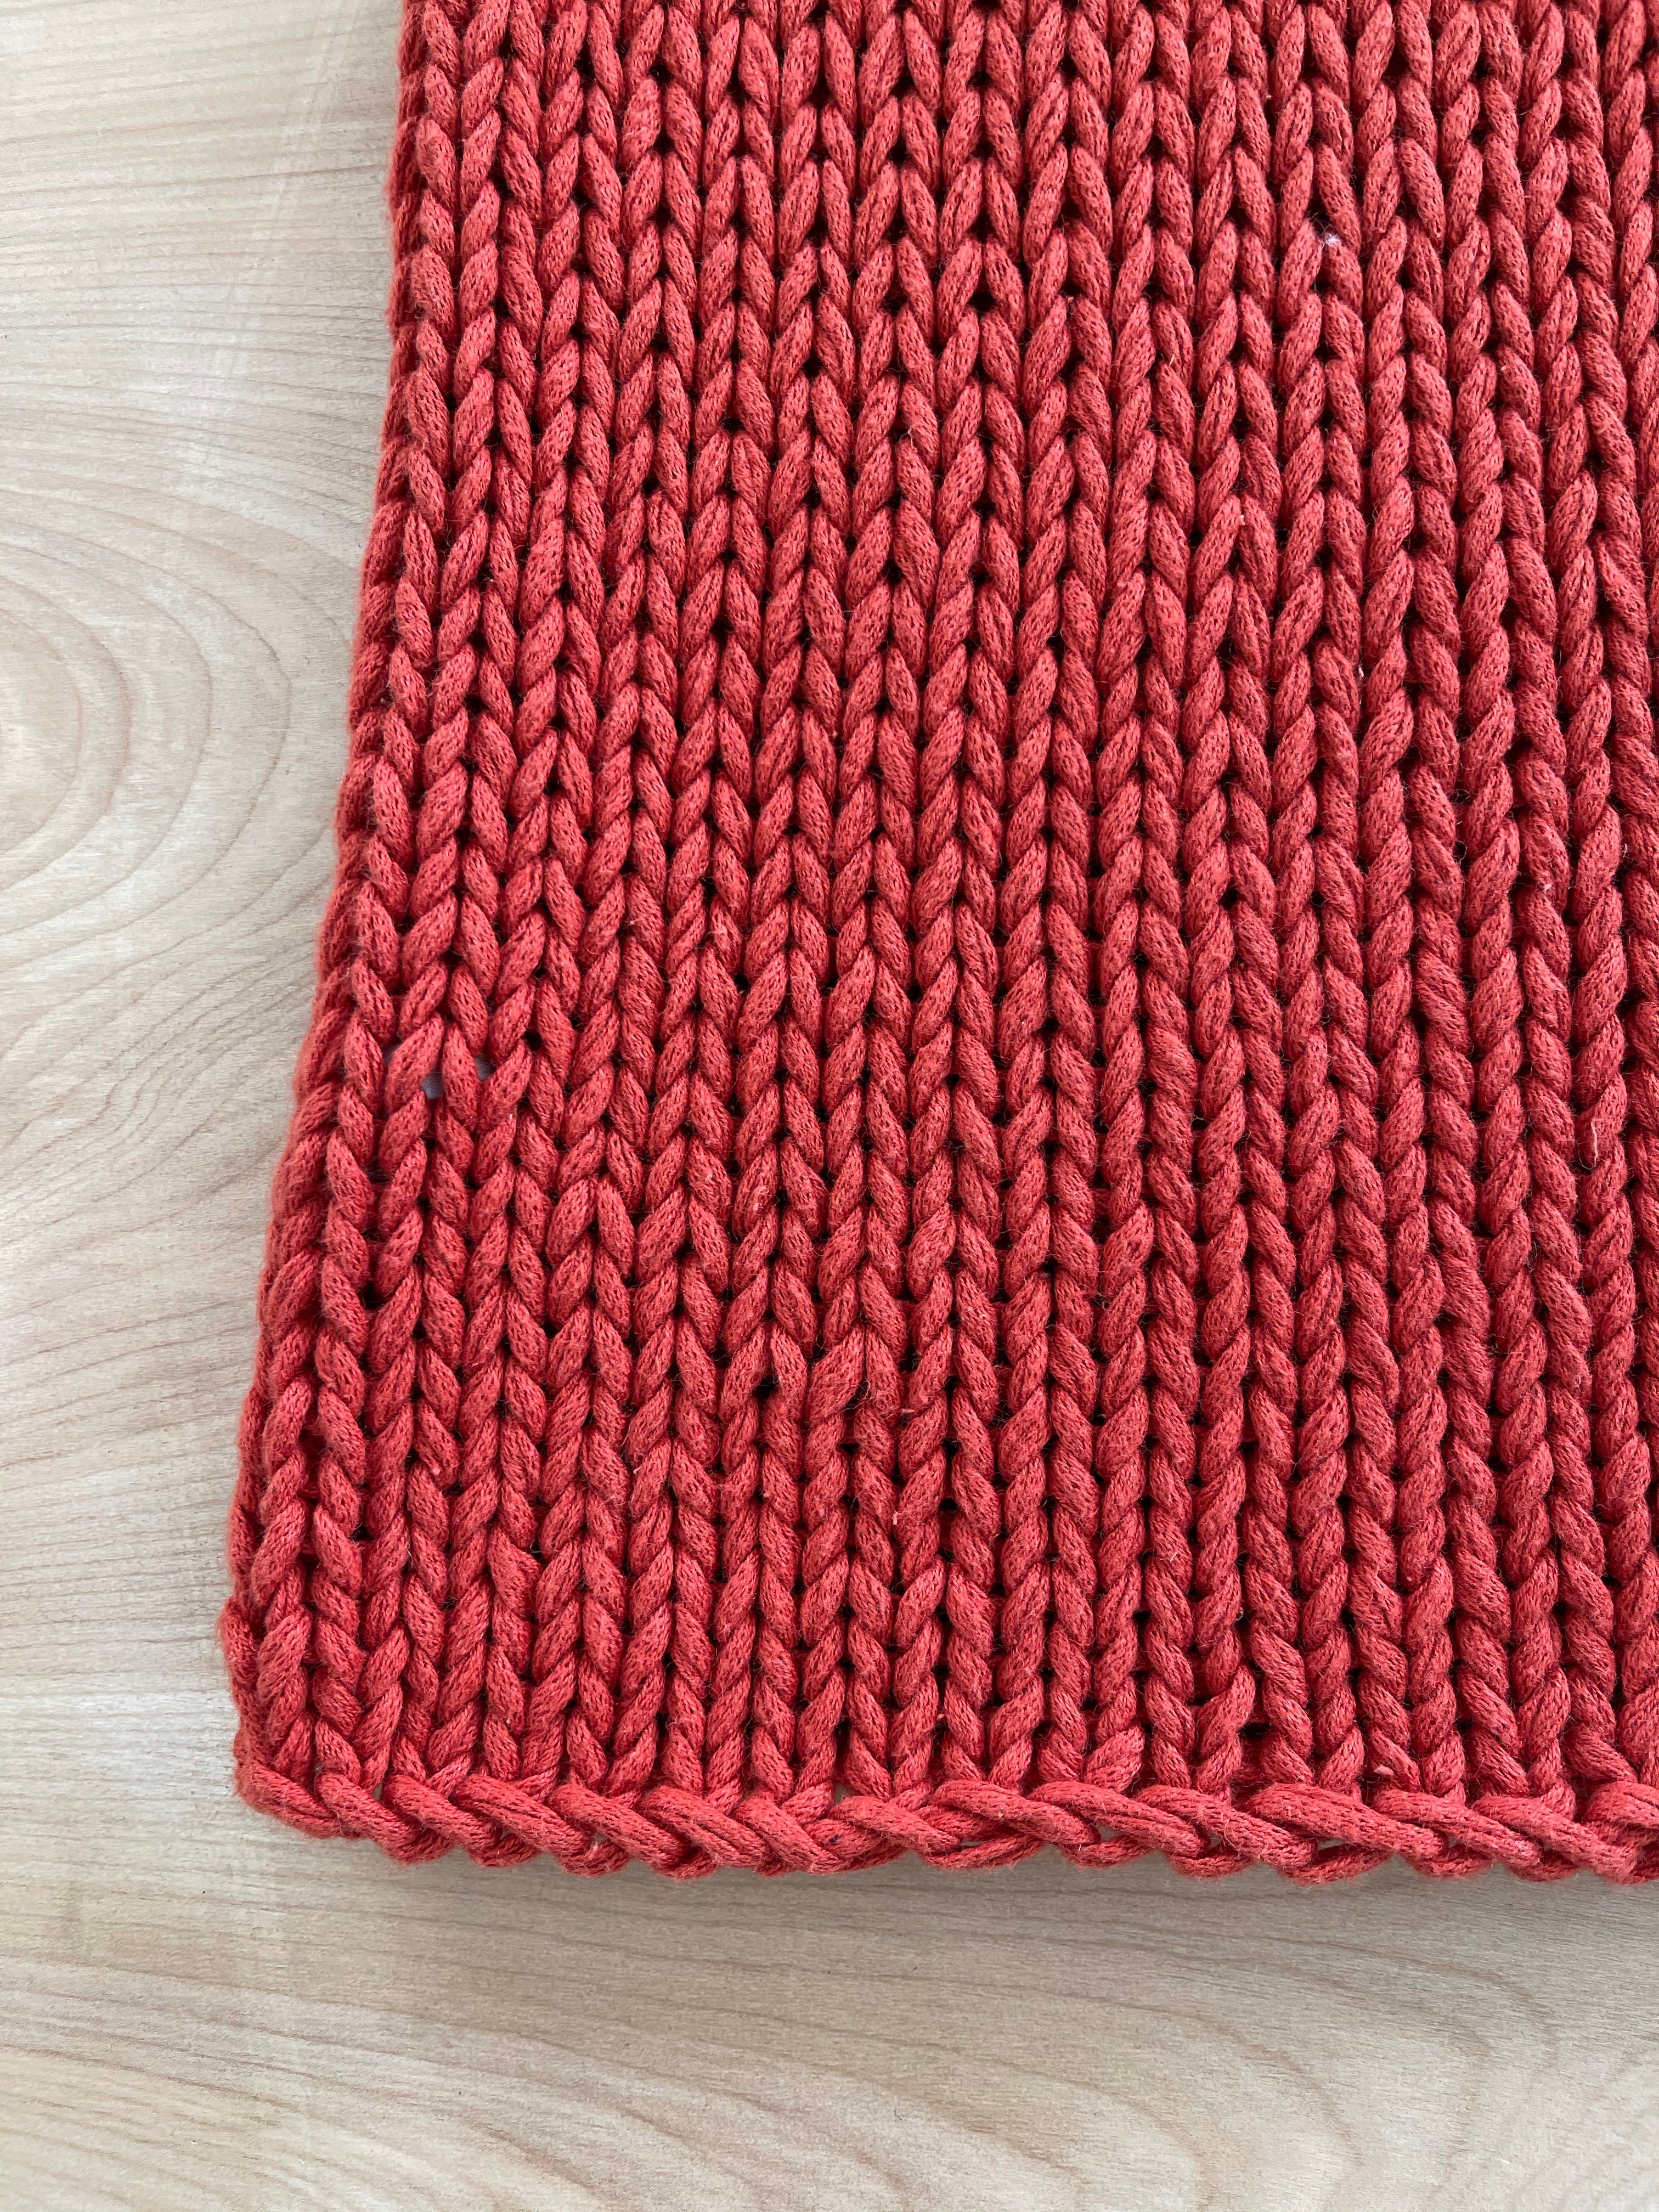 Turn Knit On Sleeveless Sweater